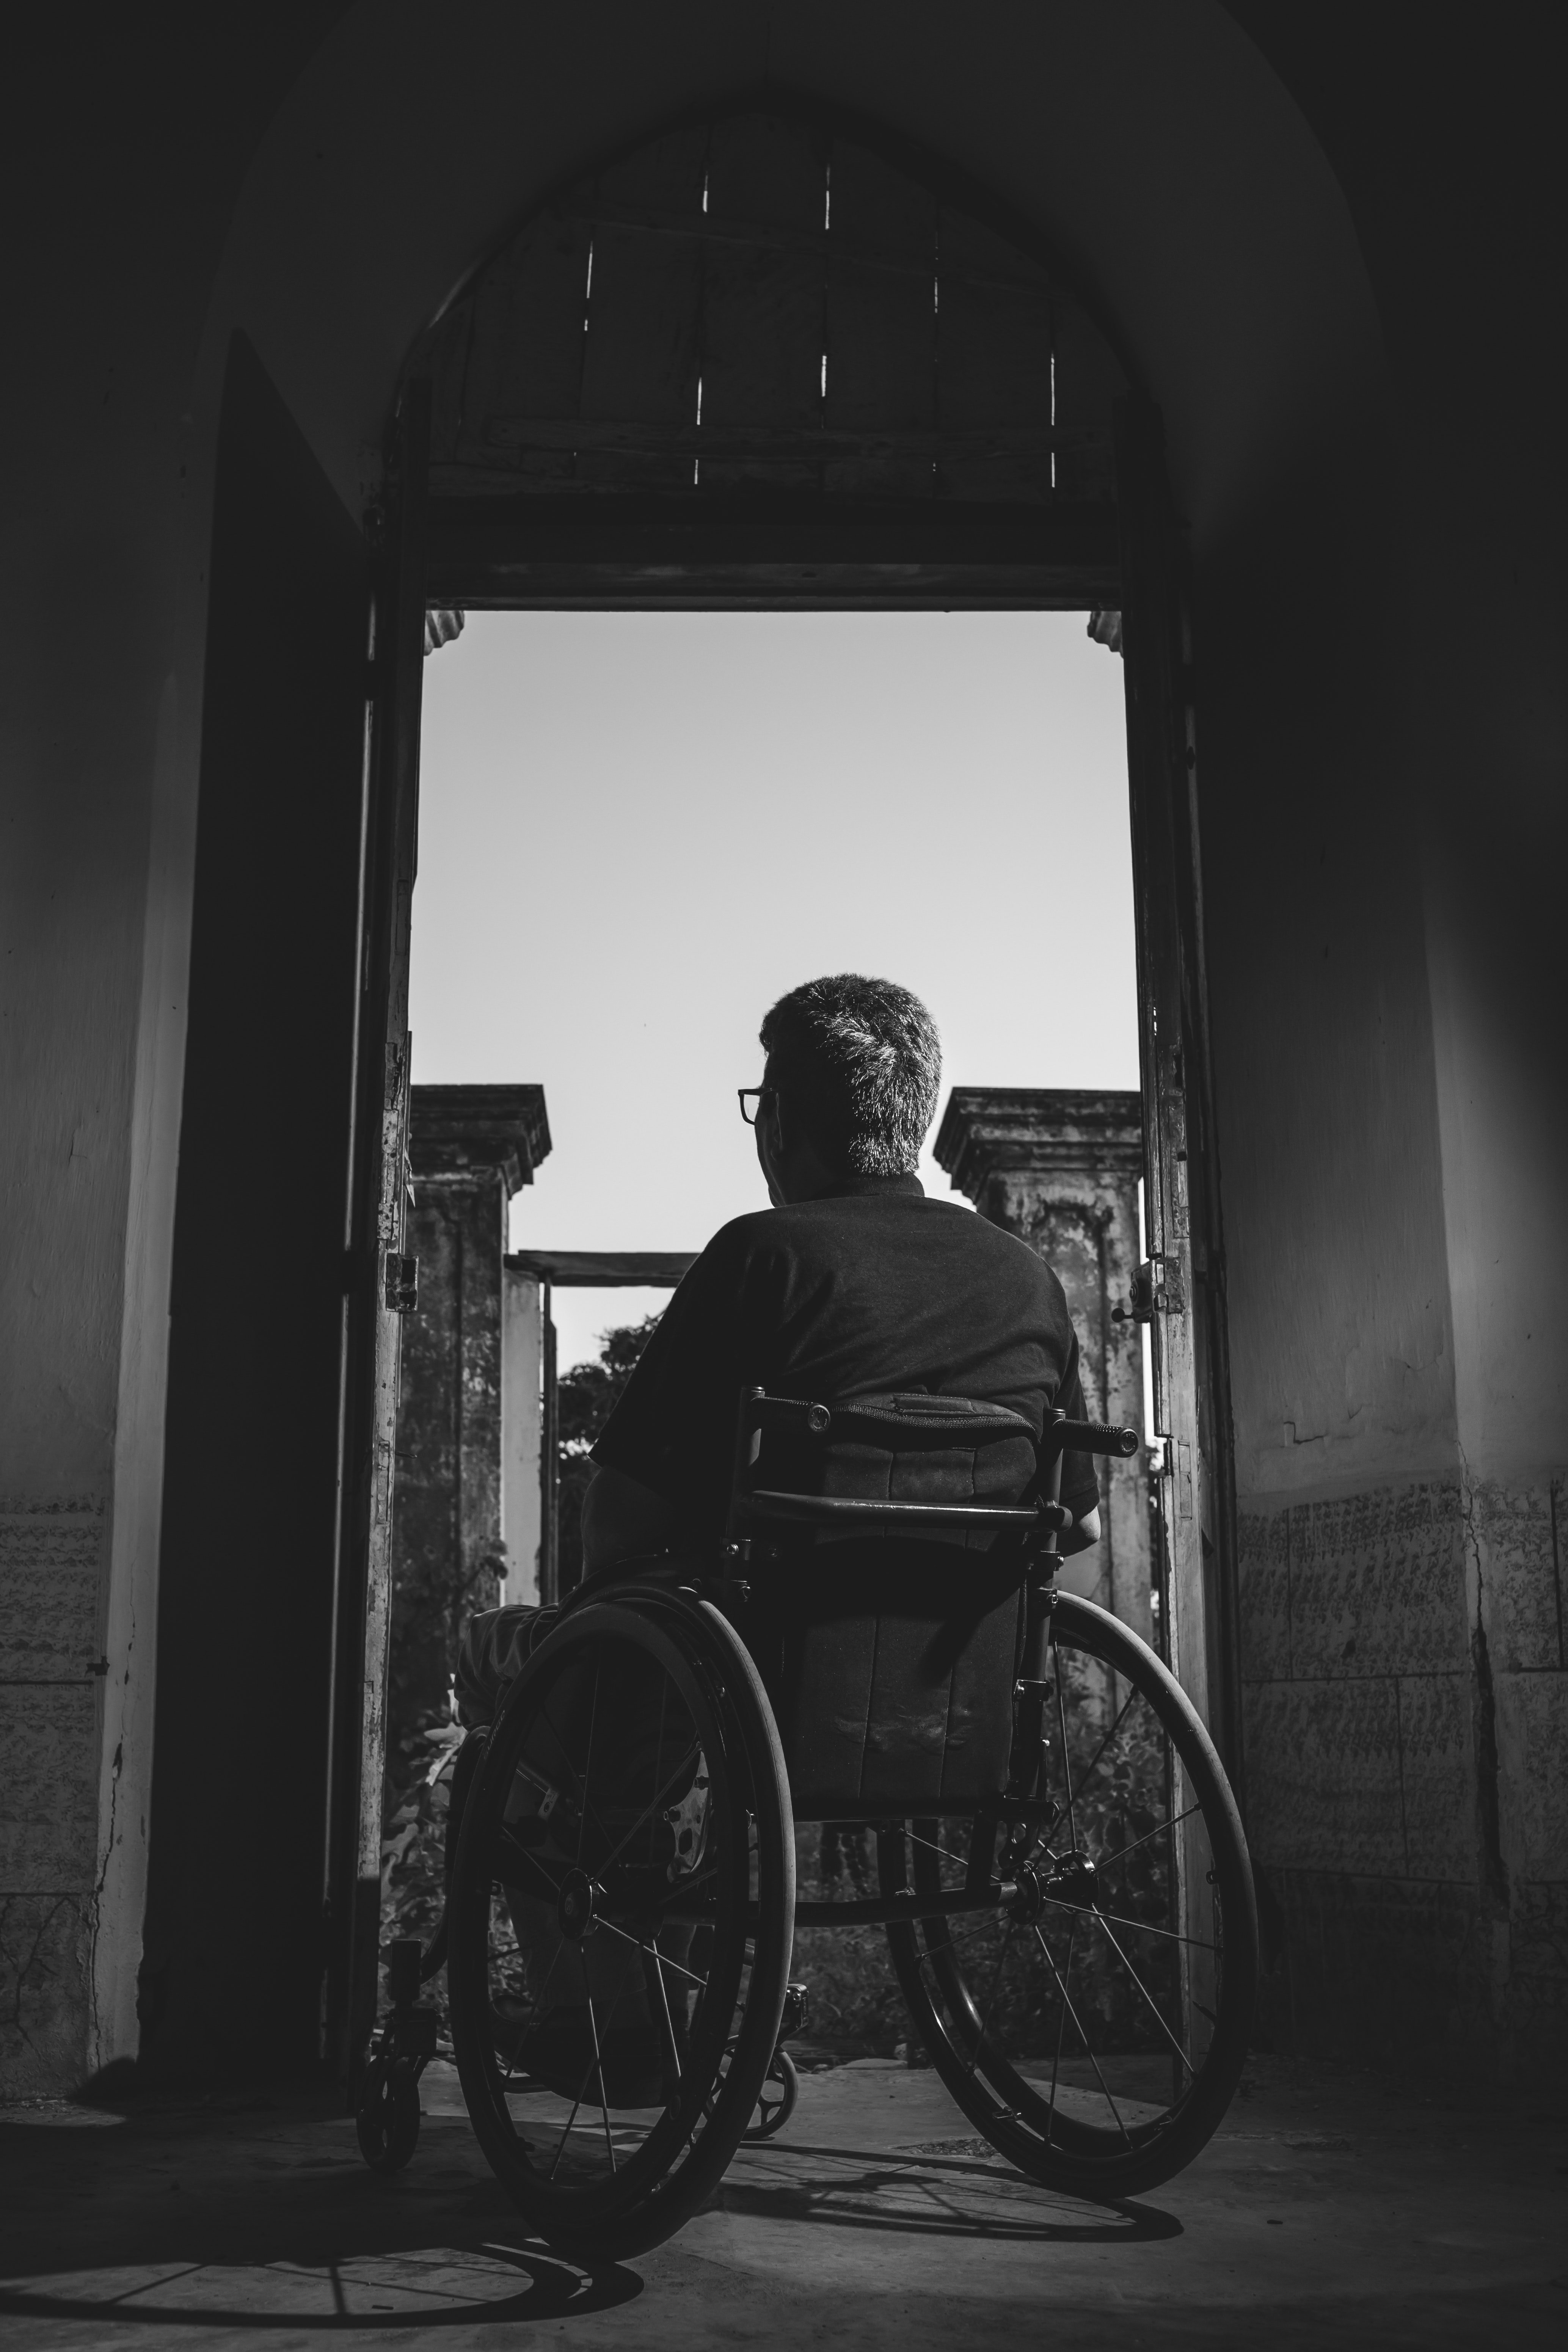 Daniel était confiné dans un fauteuil roulant après une blessure à la colonne vertébrale | Photo : Pexels